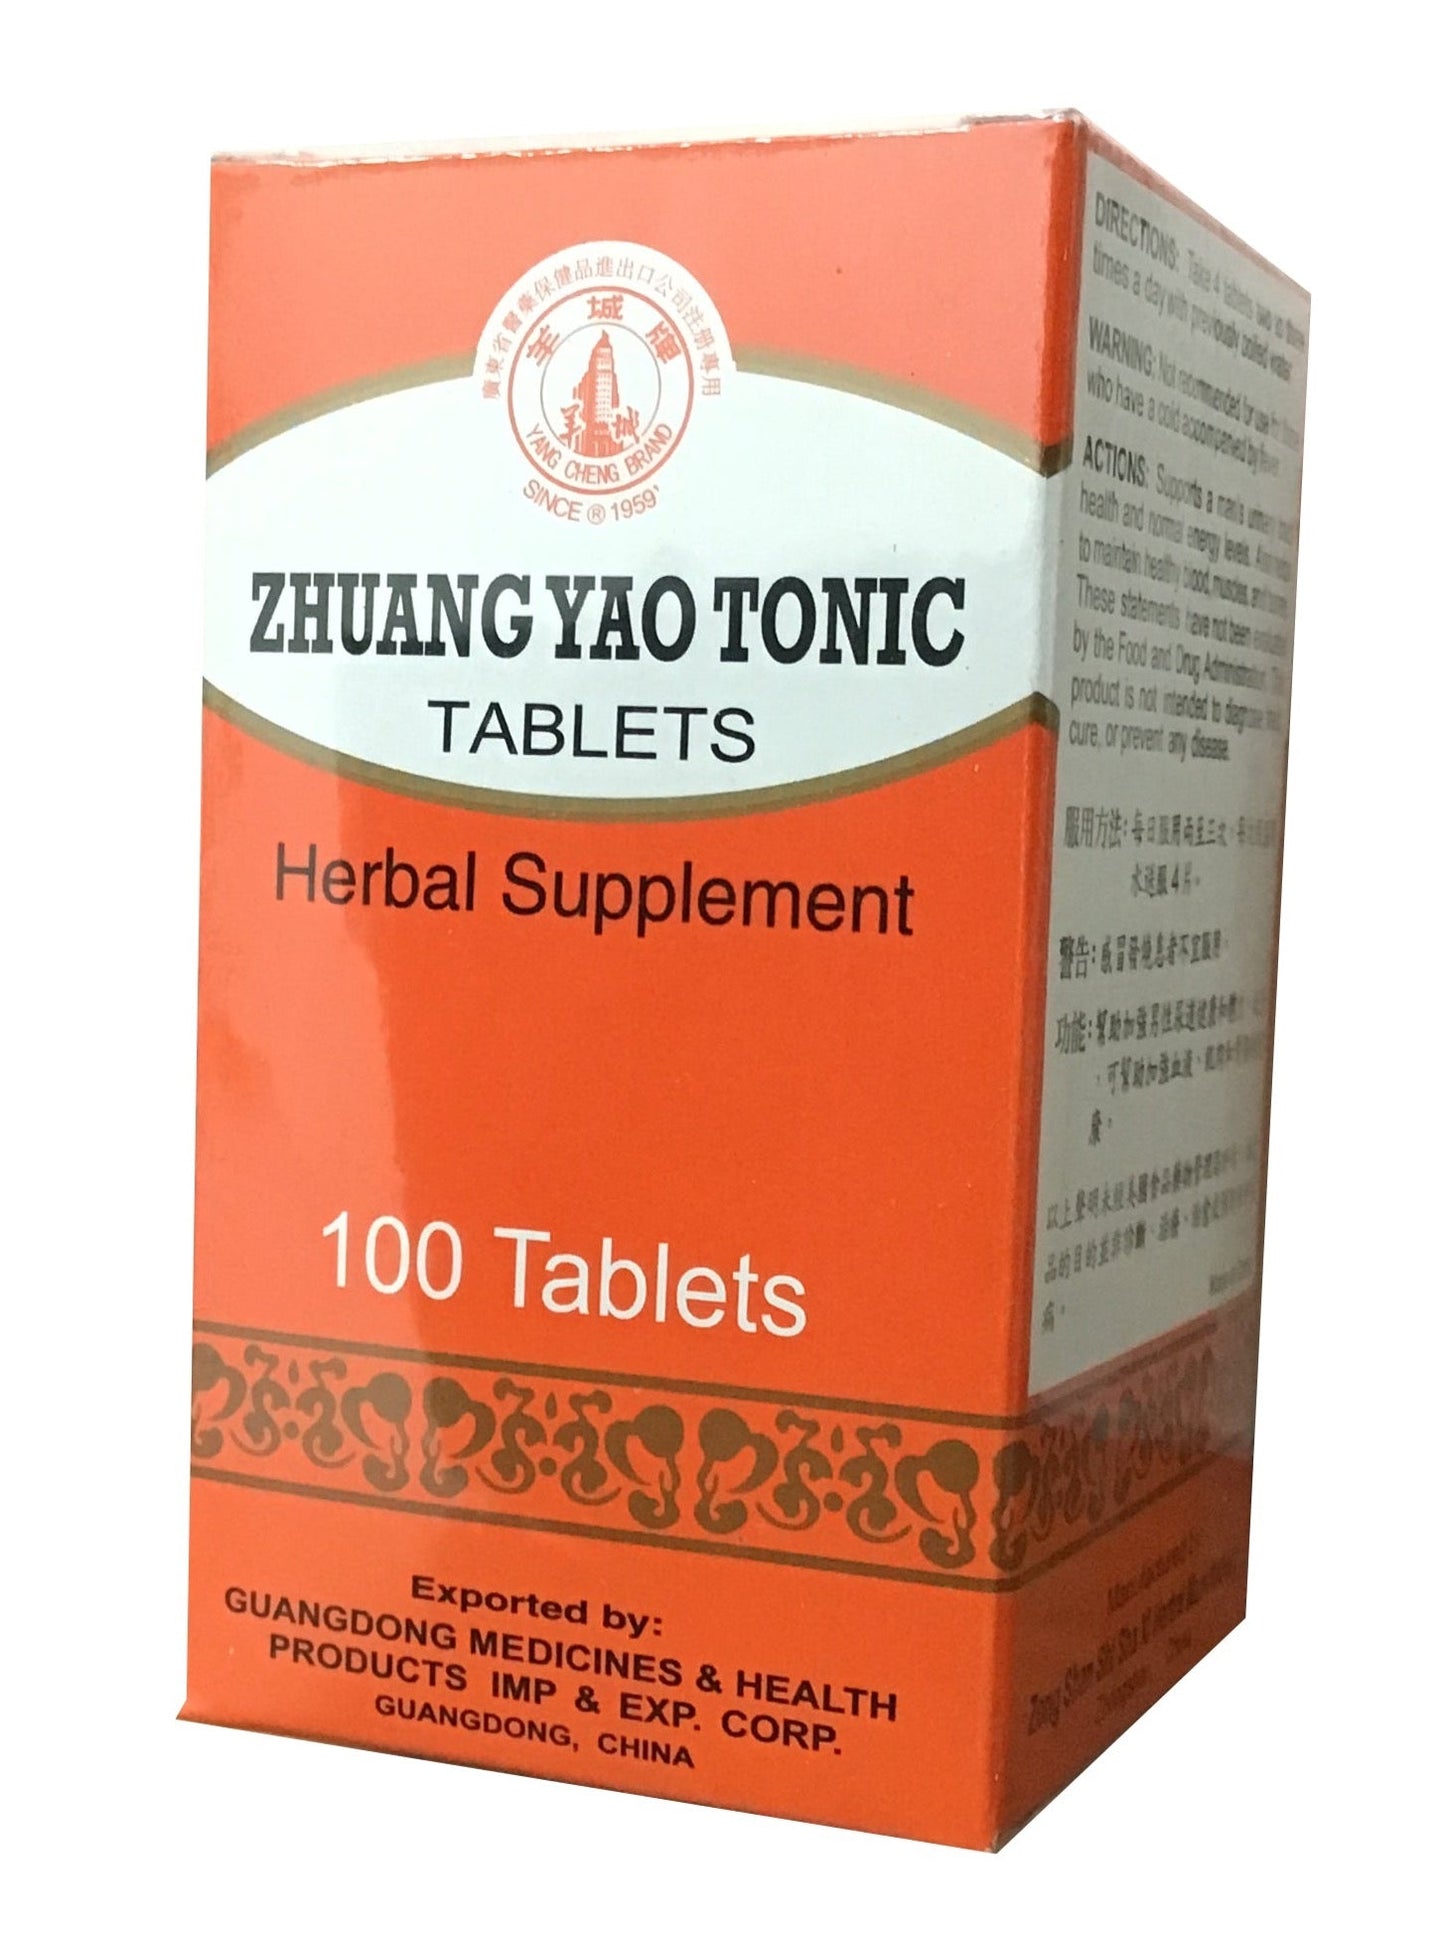 Zhuang Yao Tonic Tablets (100 Tablets) 羊城牌 壮腰健肾片